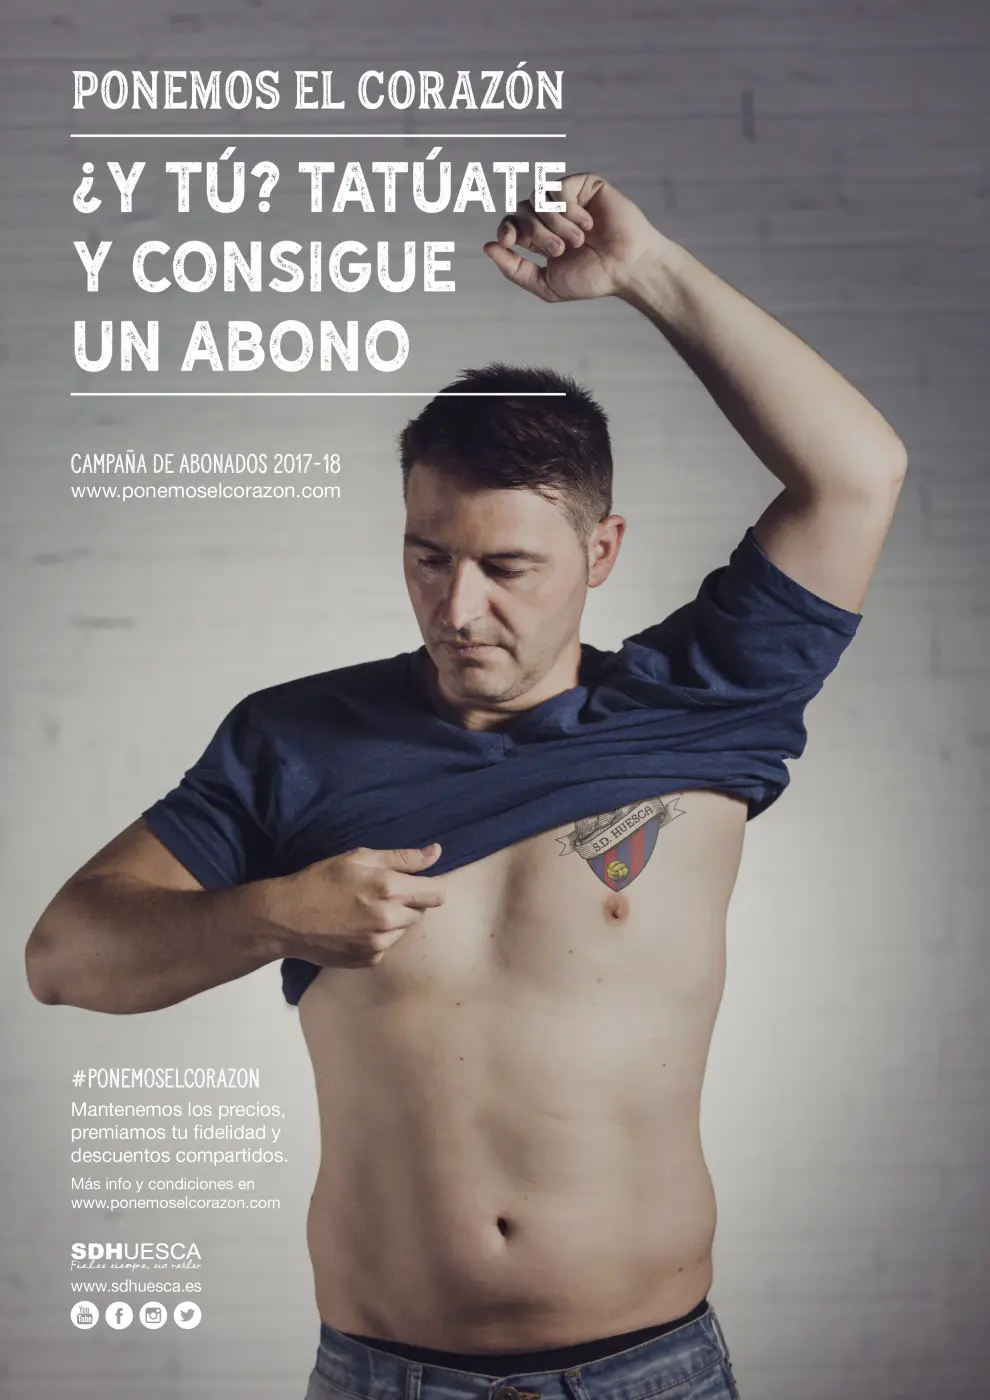 Imagen de la campaña 'Ponemos el corazón' del Huesca.